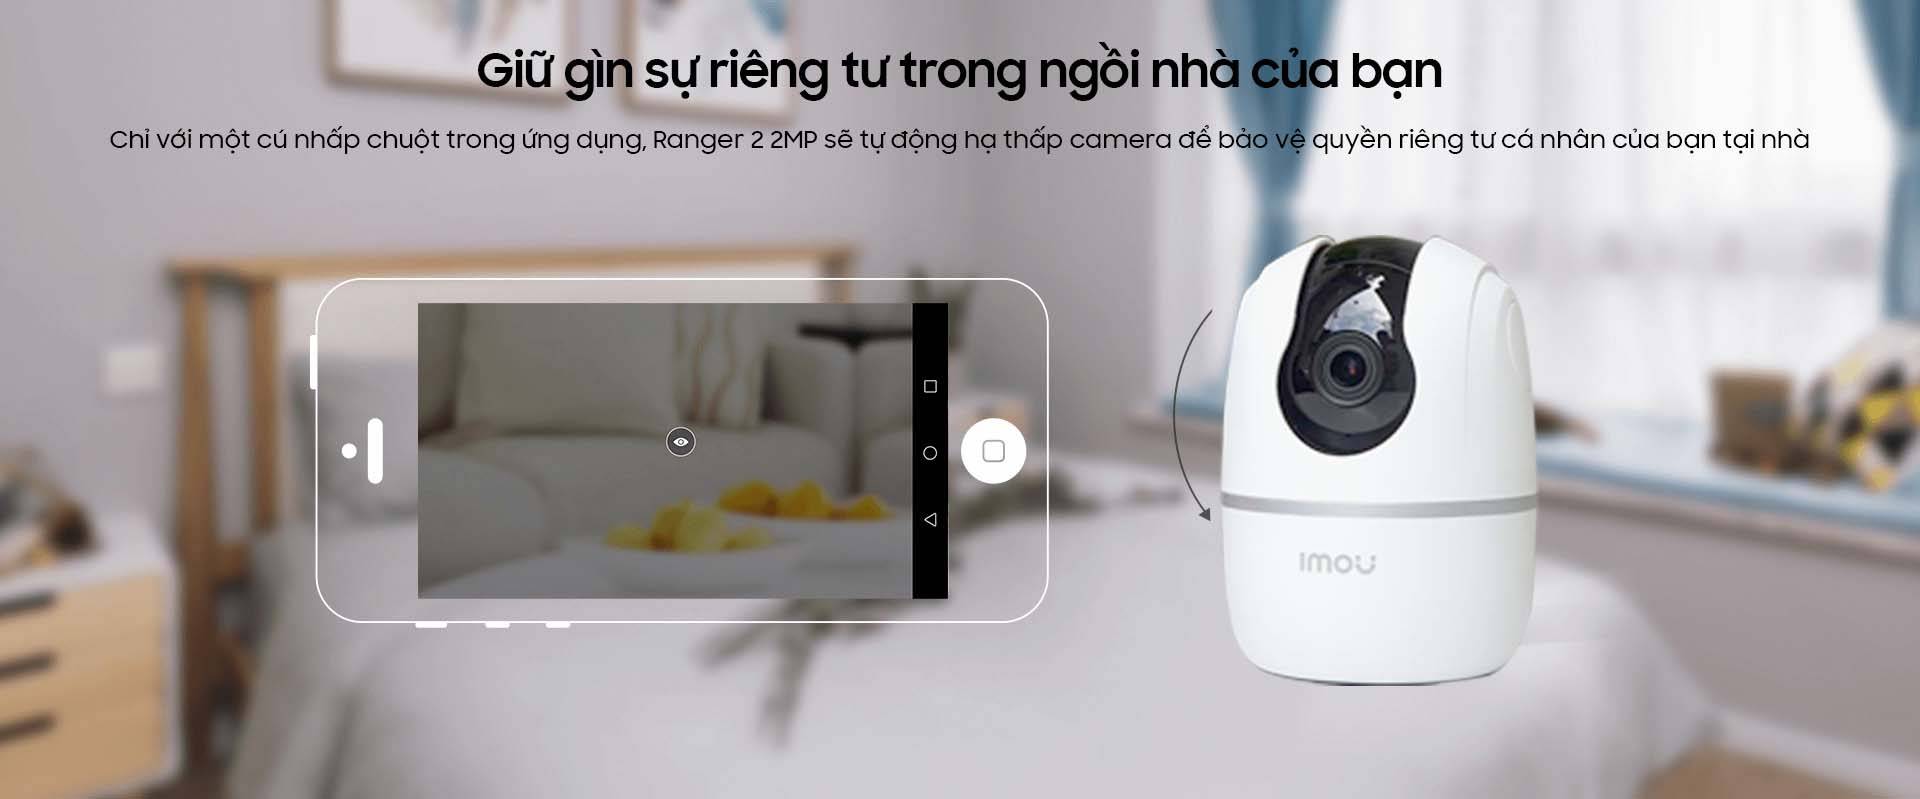 Camera IP WIFI IMOU RANGER 2 IPC - A22EP Full HD 1080P - Hàng Chính Hãng